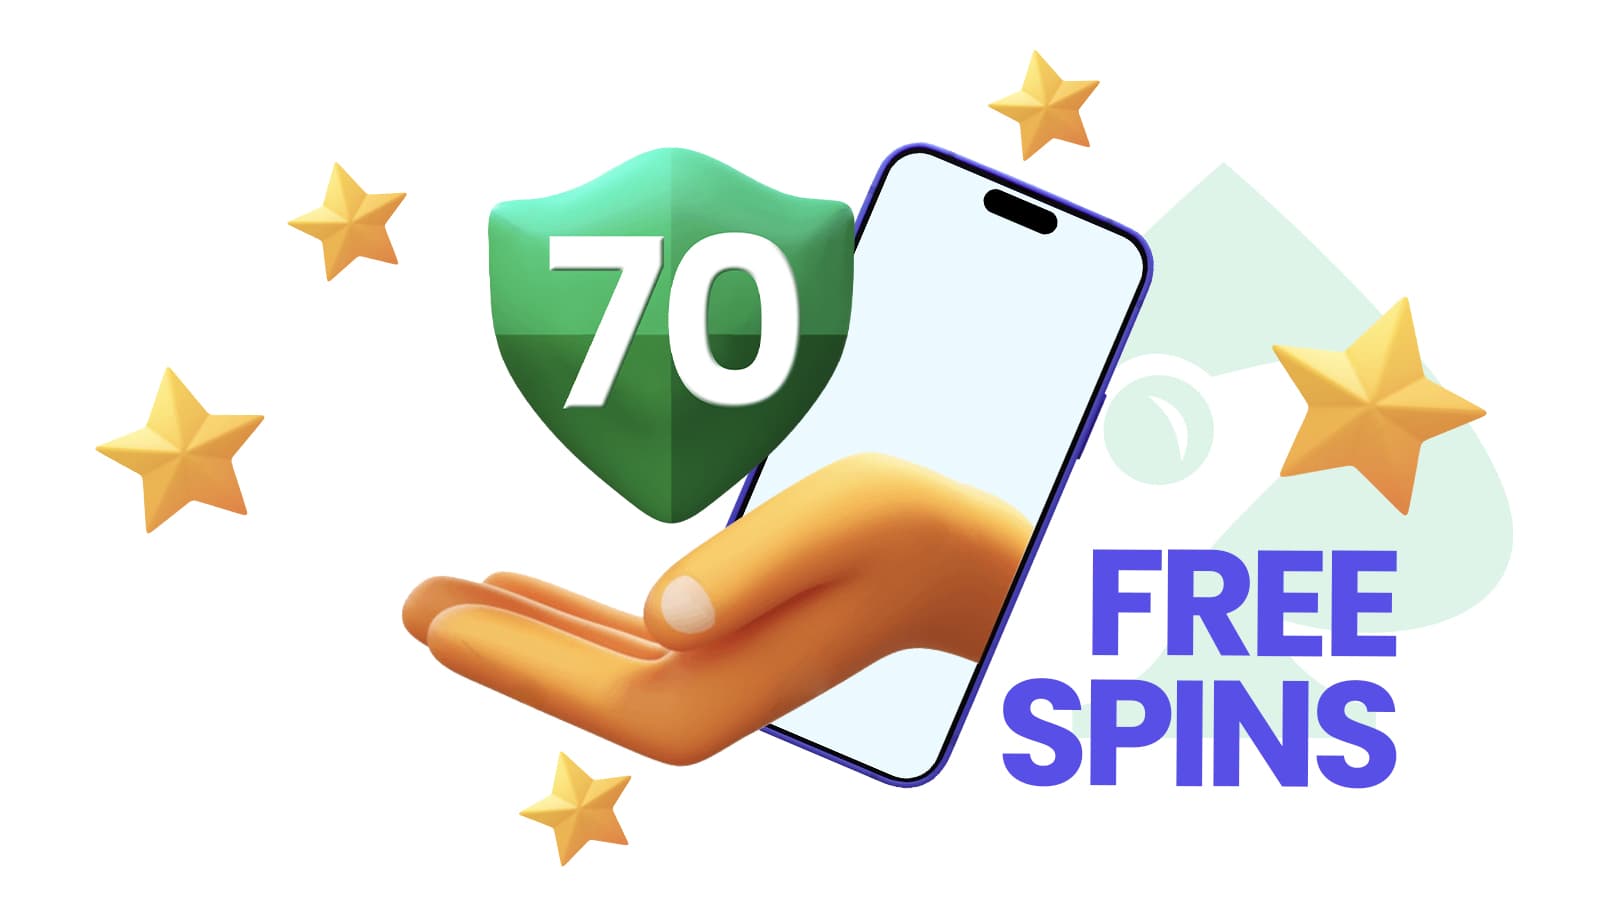 70 free spins online casino